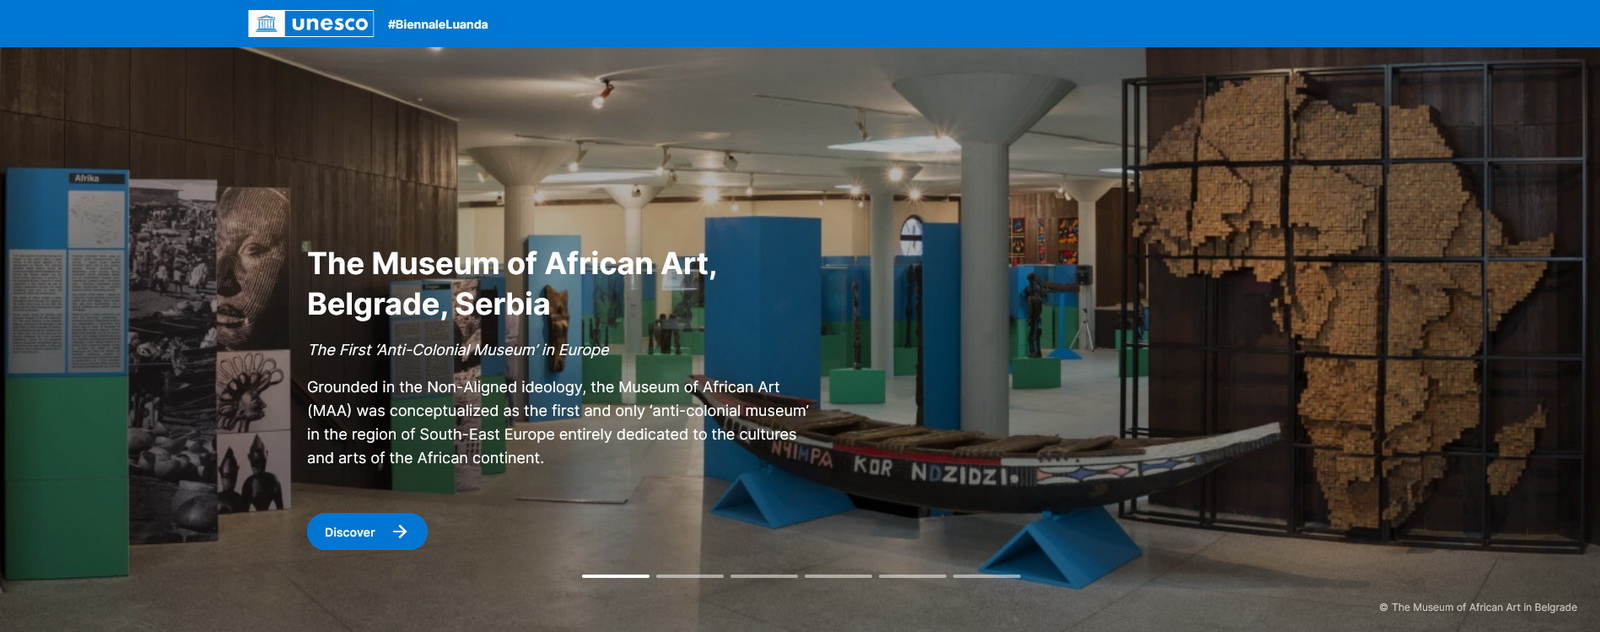 Muzej afričke umetnosti na Bijenalu u Luandi